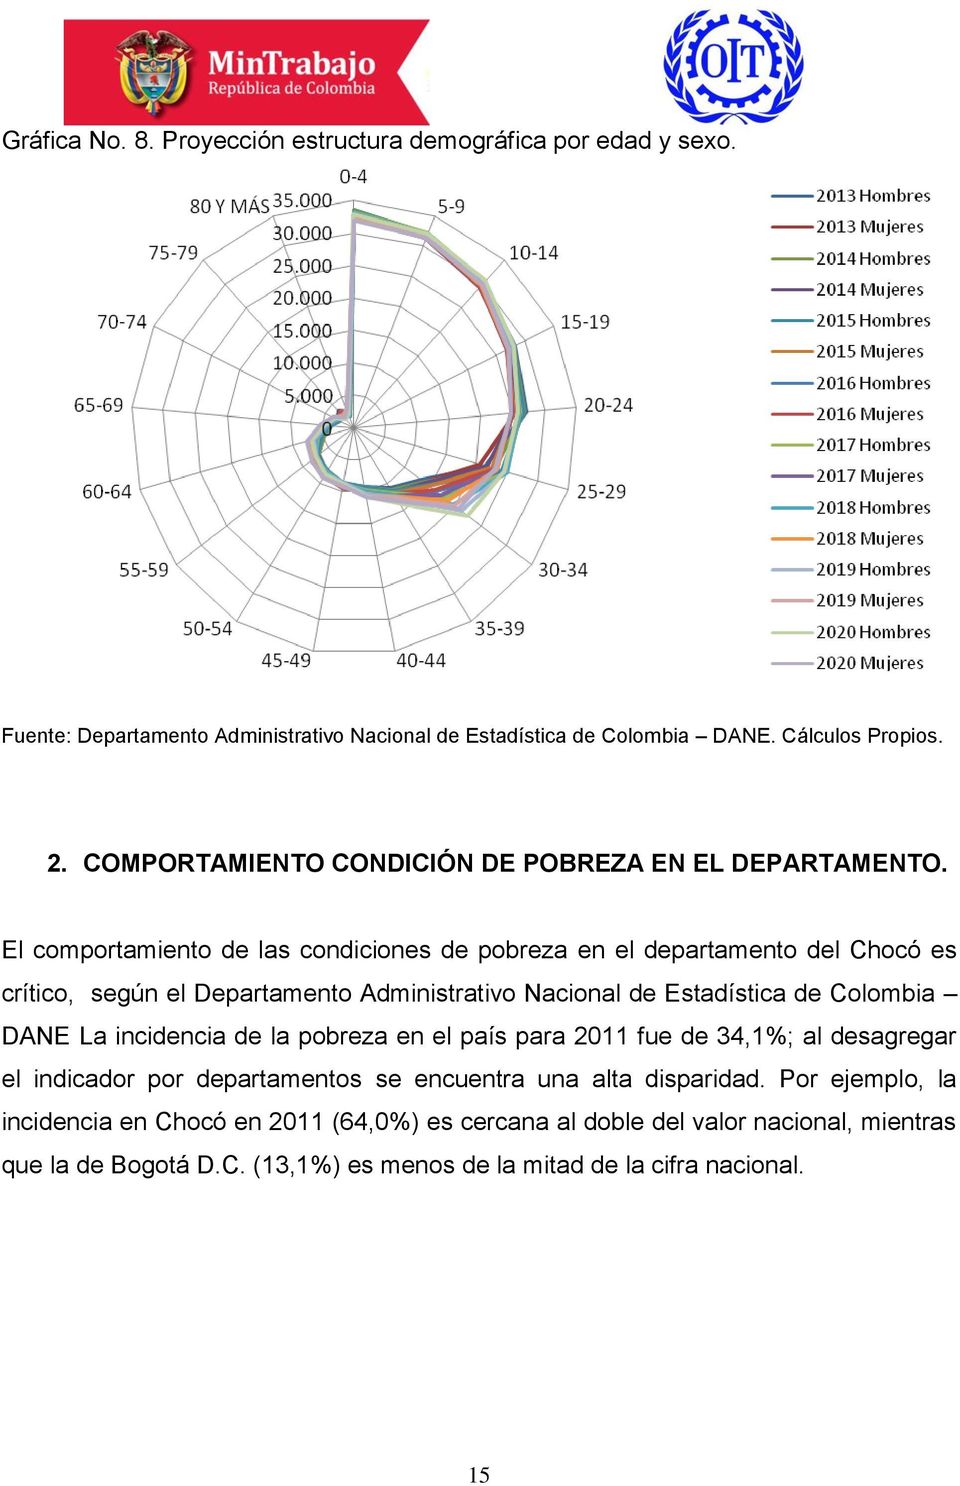 El comportamiento de las condiciones de pobreza en el departamento del Chocó es crítico, según el Departamento Administrativo Nacional de Estadística de Colombia DANE La